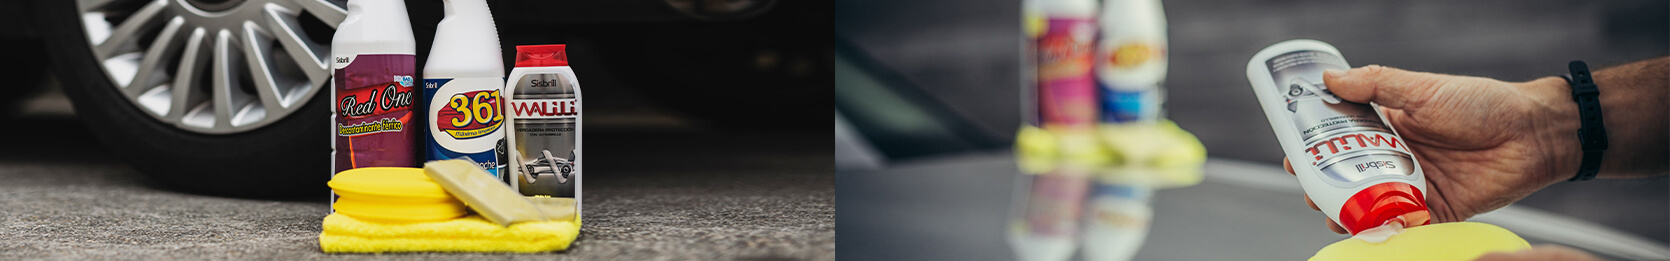 Kit Cuidado de la Pintura Sisbrill al fondo apoyado sobre un coche de pintura gris y delante de un coche de pintura negra